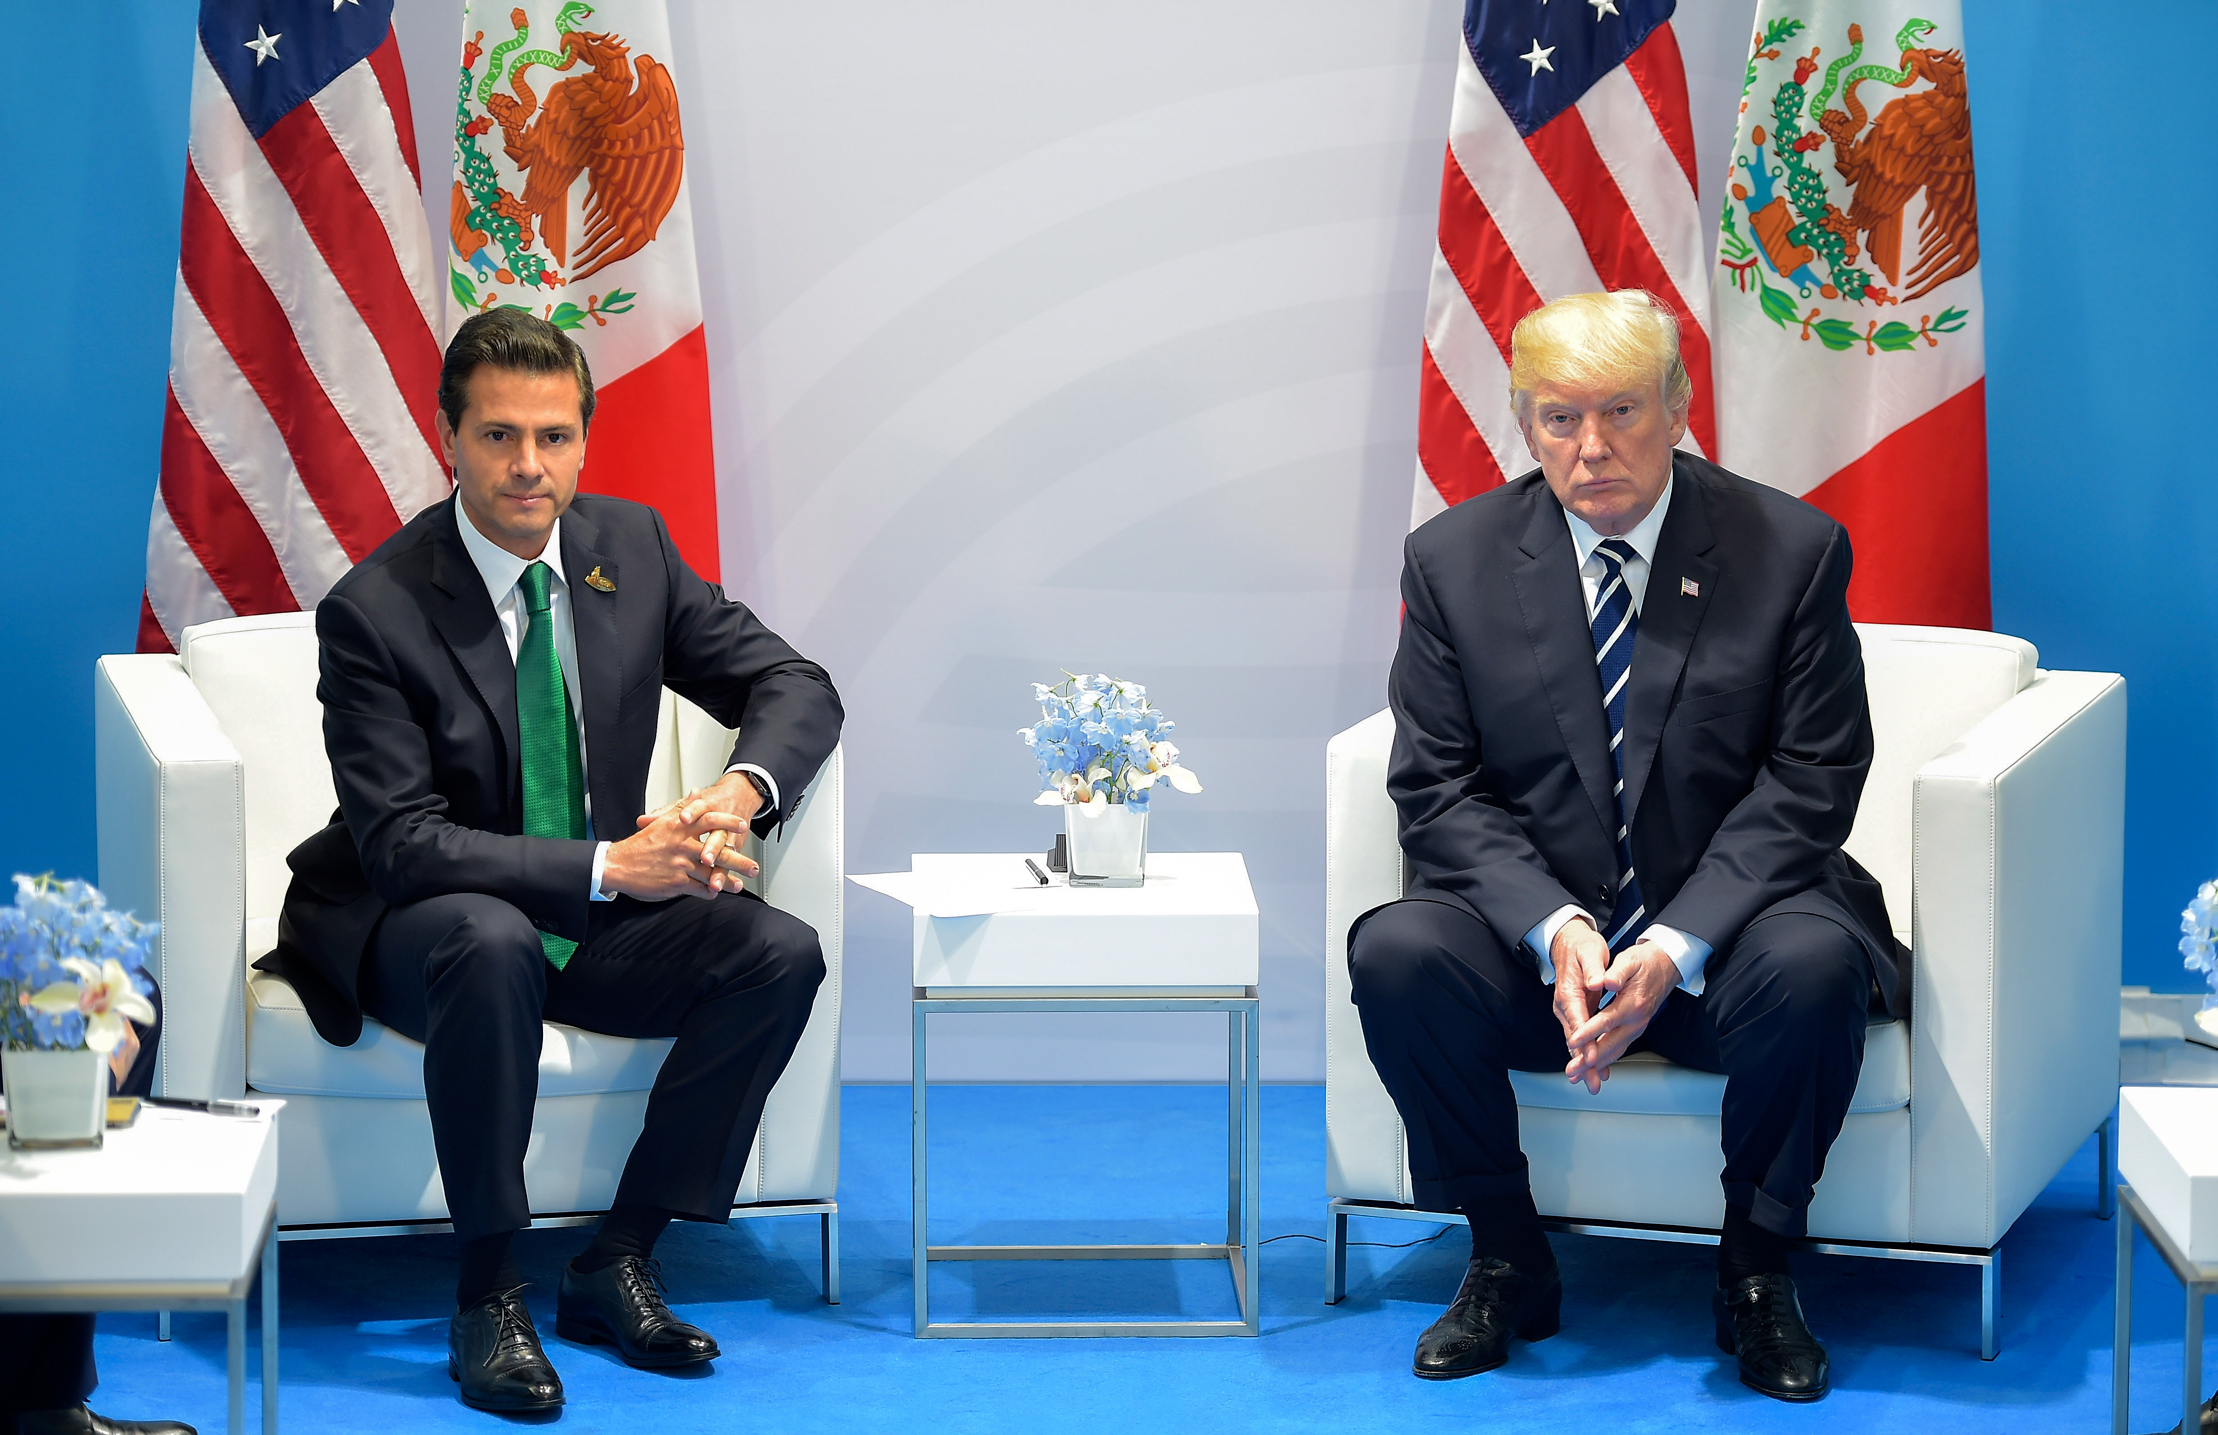 Enrique_Peña_Nieto_meets_with_Donald_Trump,_G-20_Hamburg_summit,_July_2017_(4).jpg